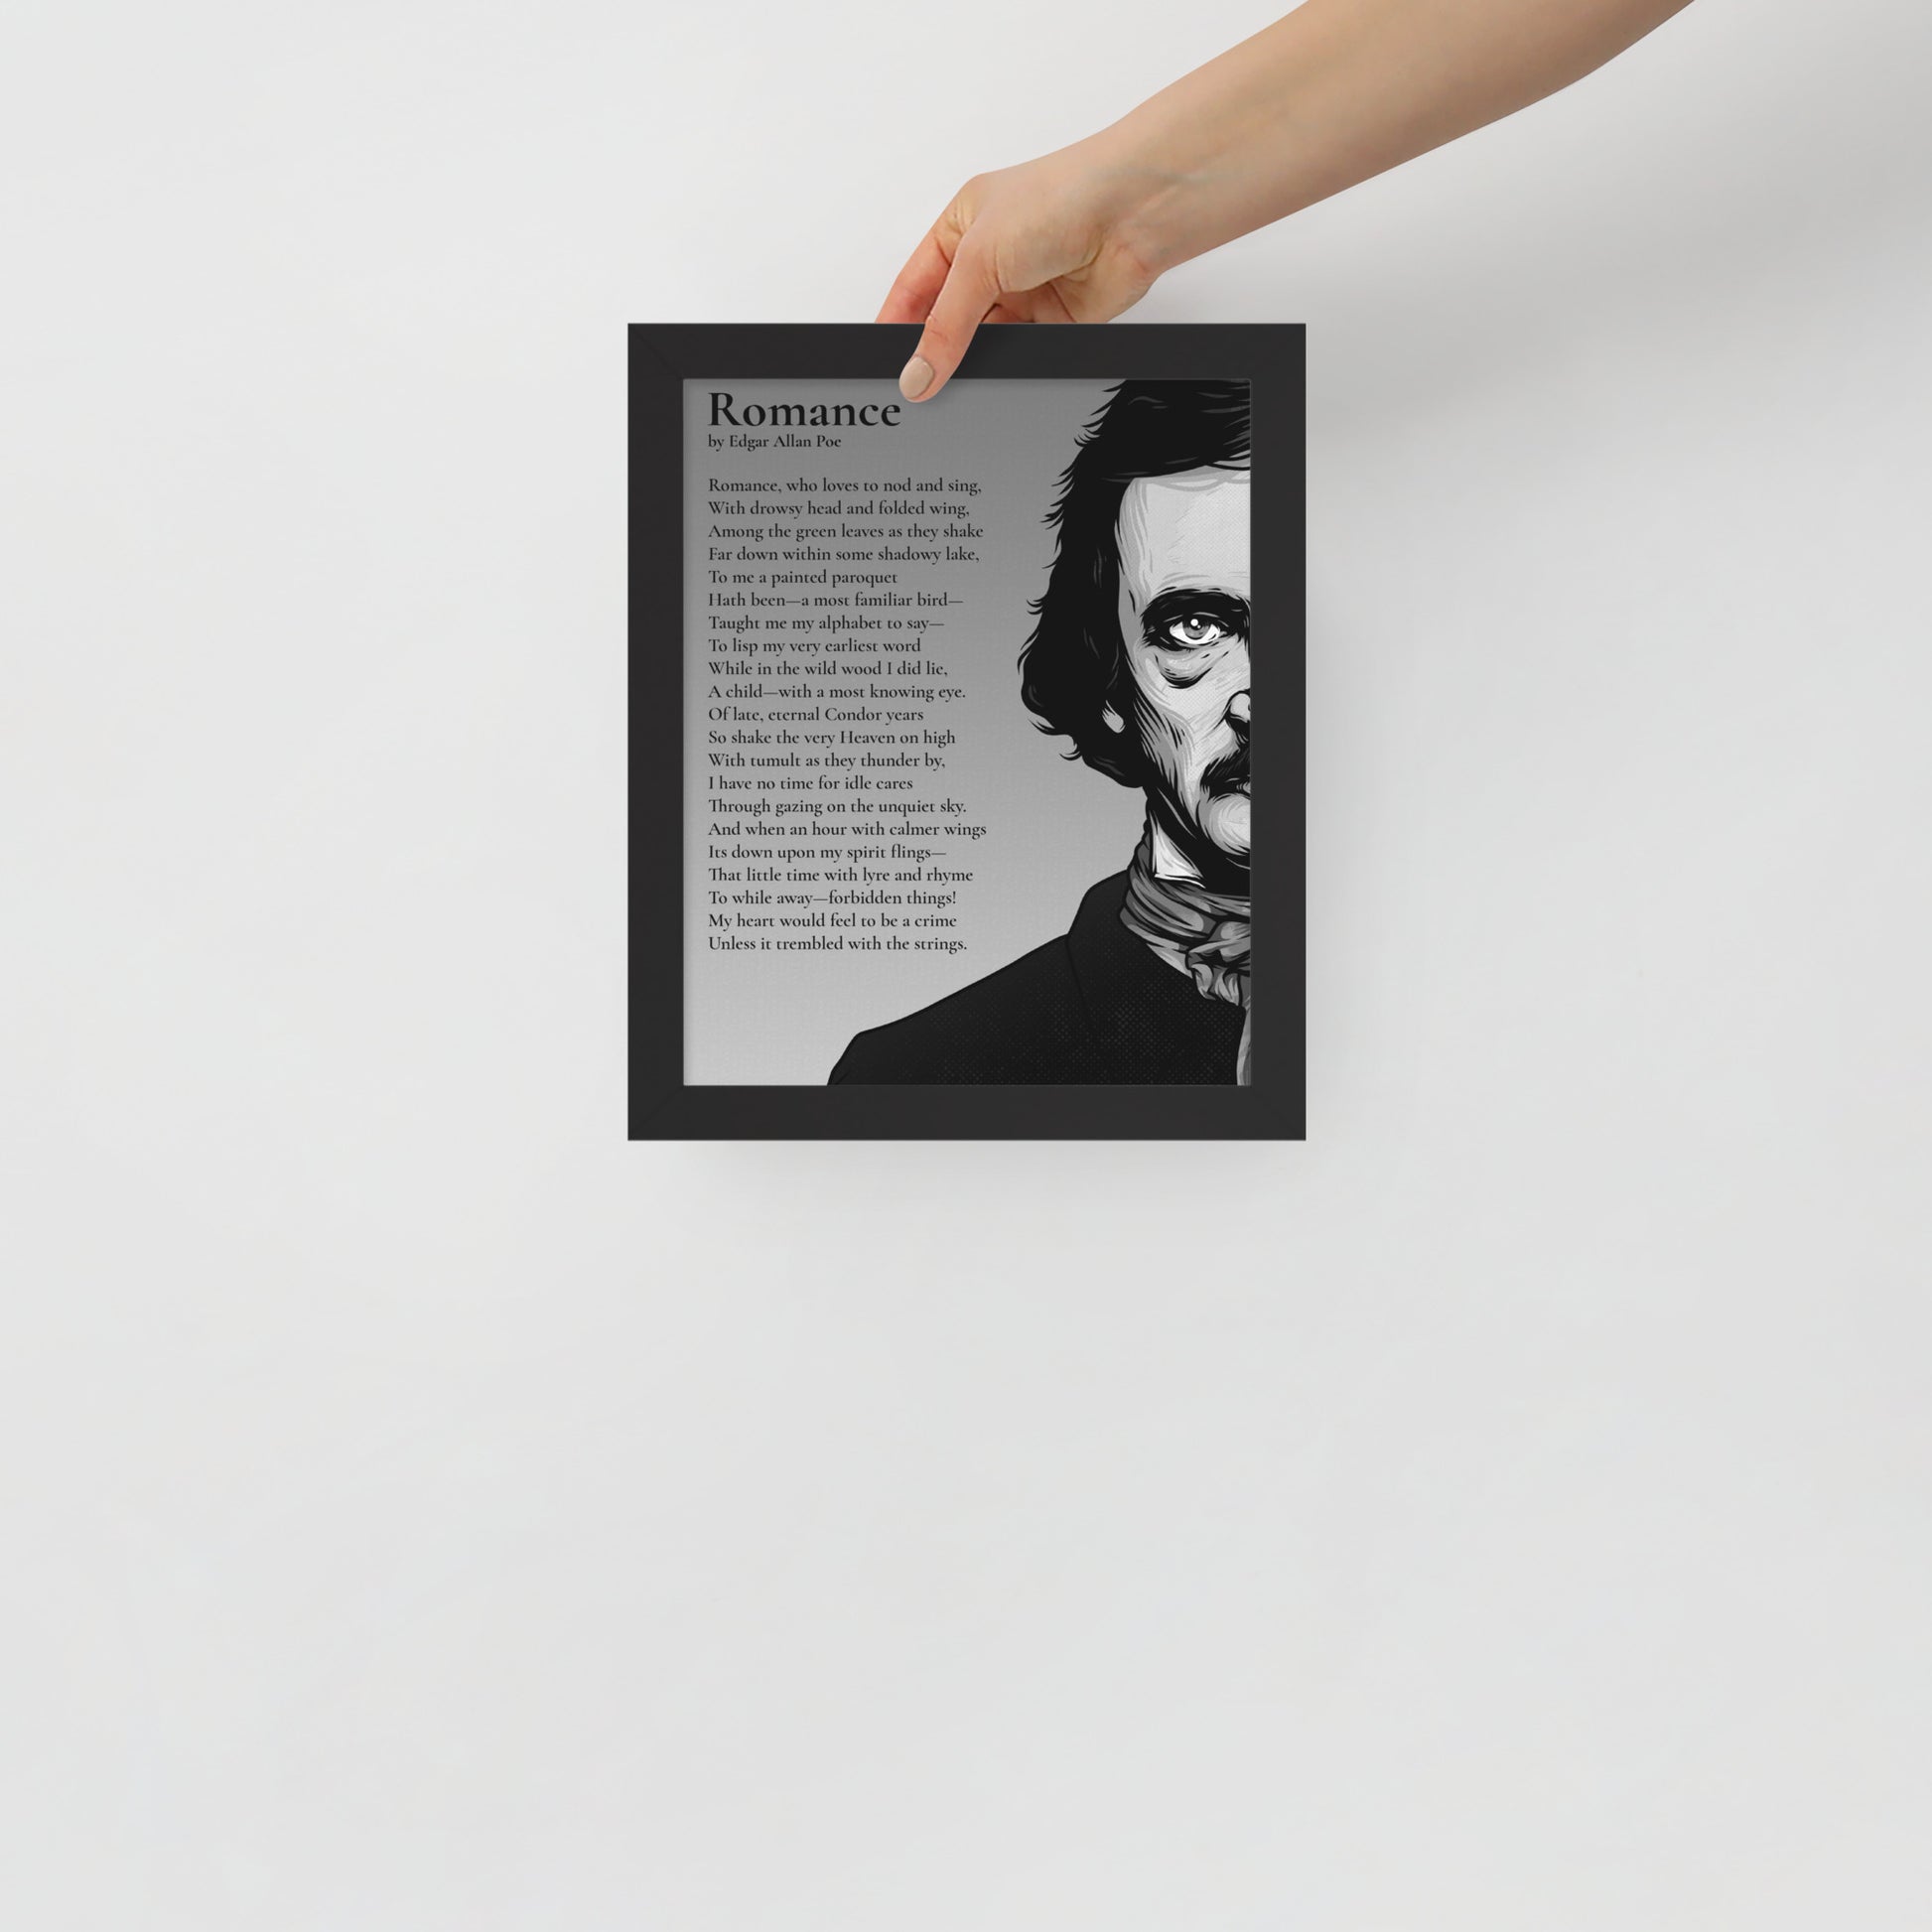 Edgar Allan Poe's 'Romance' Framed Matted Poster - 8 x 10 Black Frame